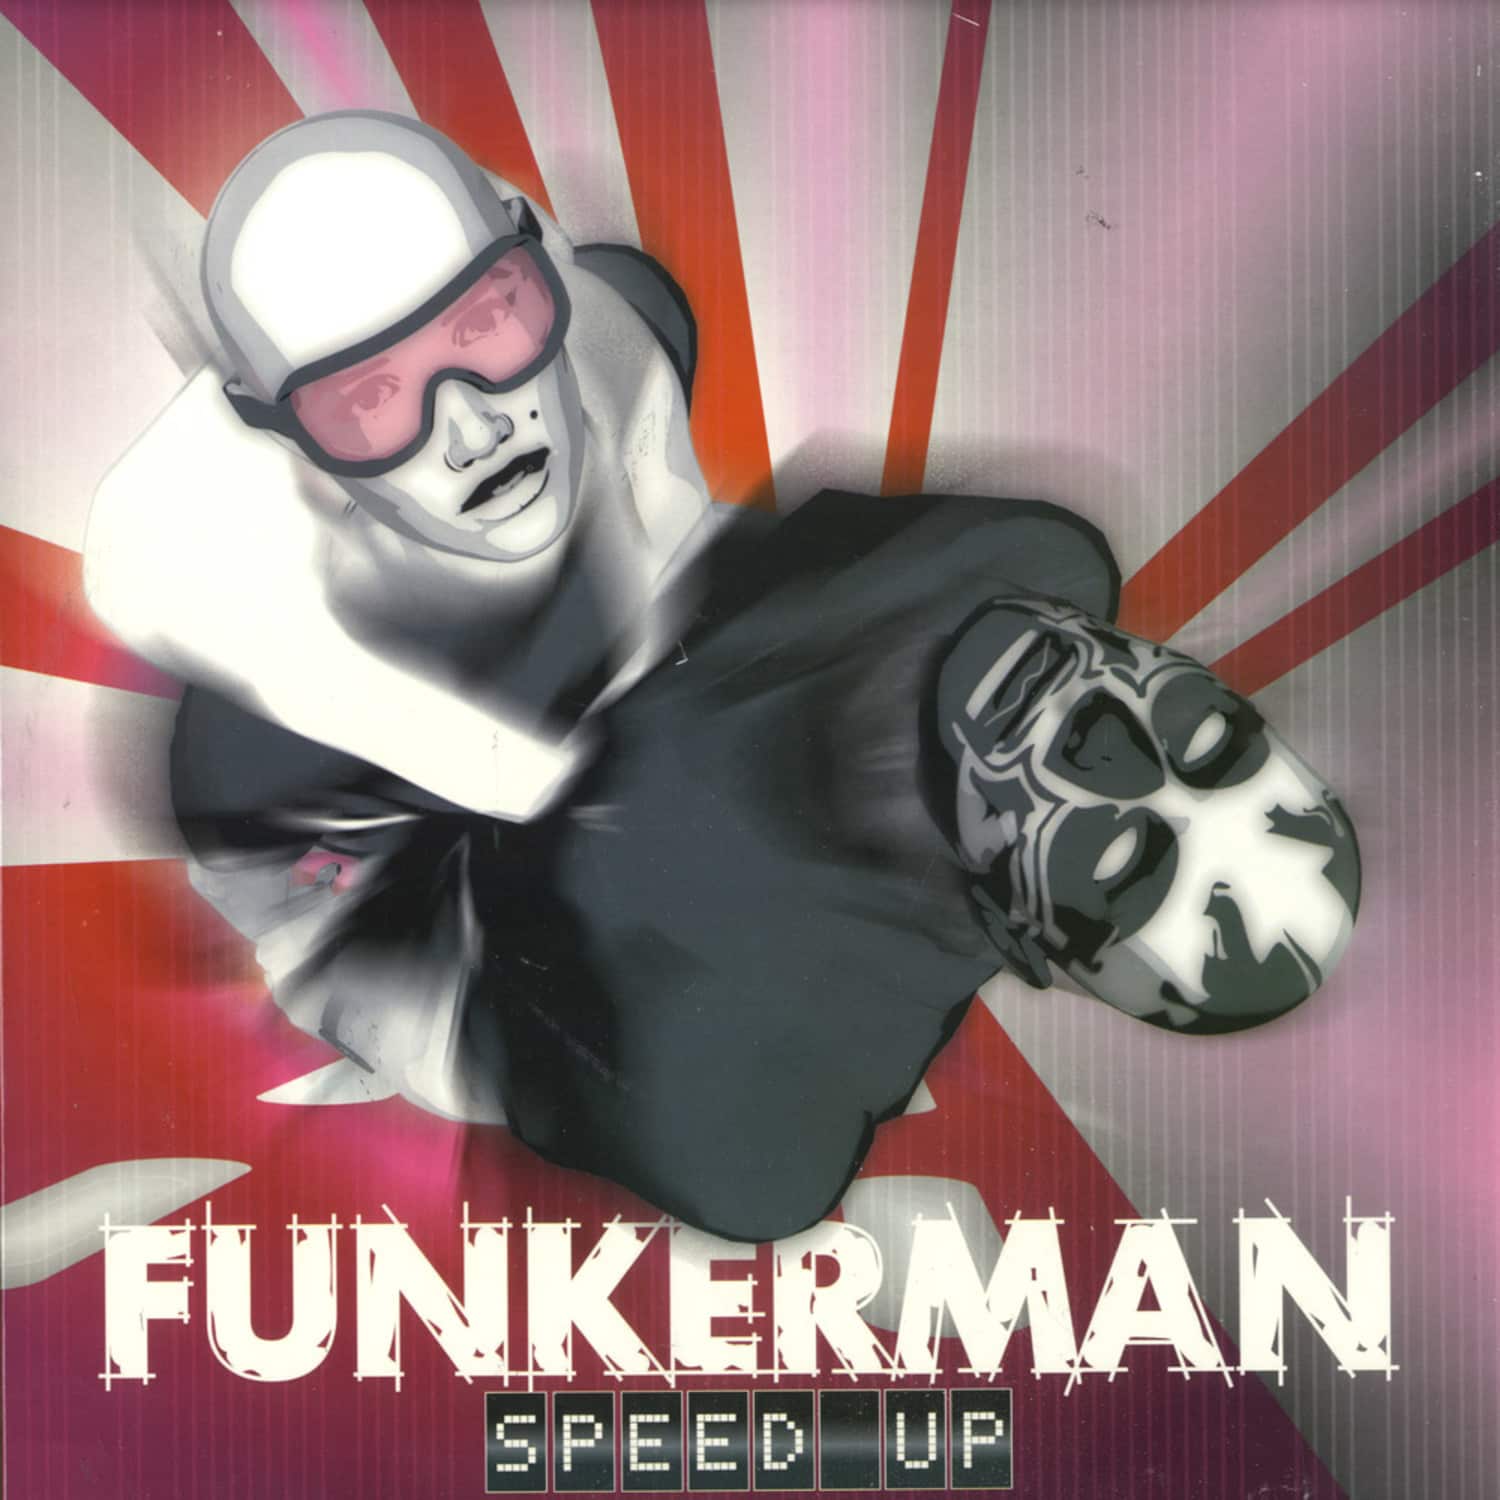 Funkerman - SPEED UP